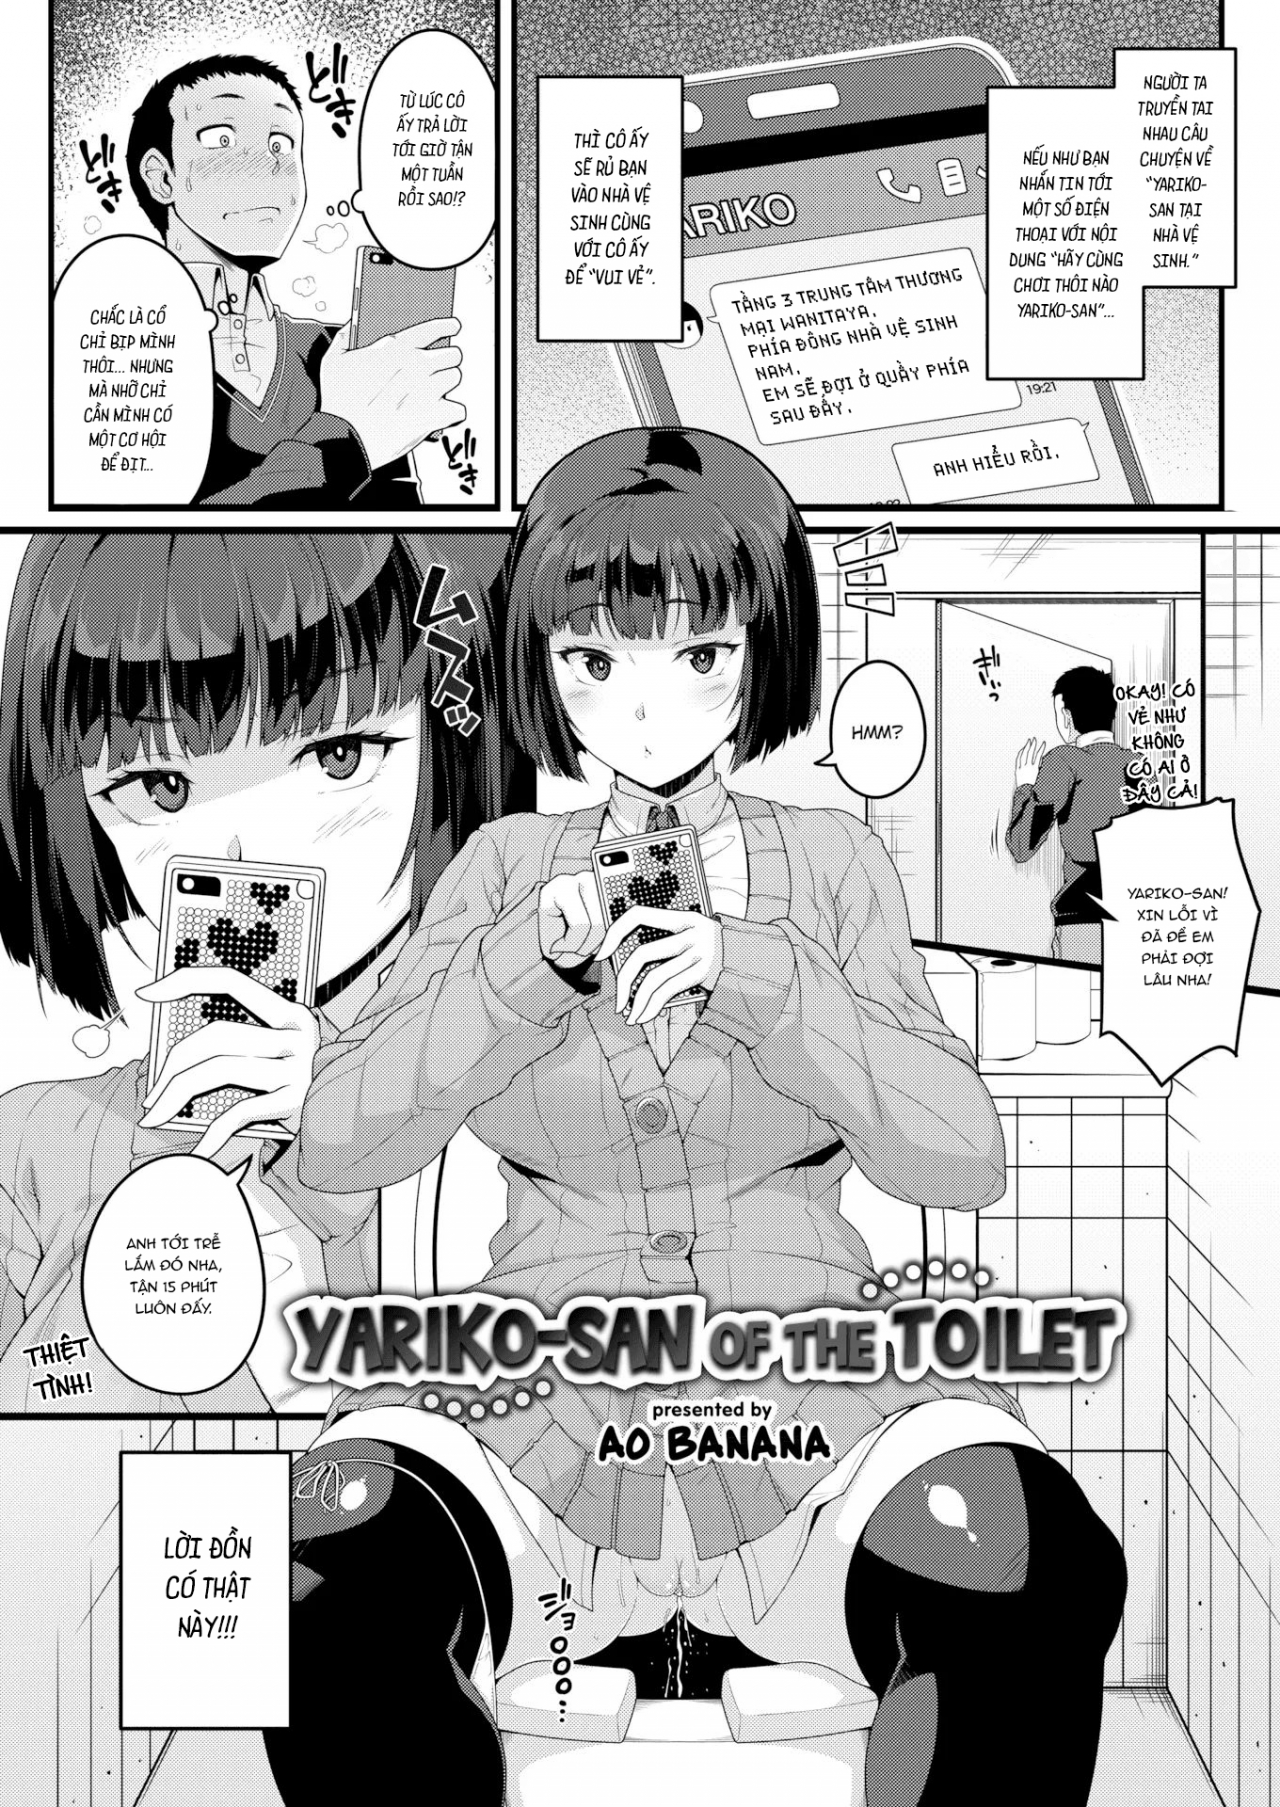 Bóng ma của nhà vệ sinh, Yariko-san